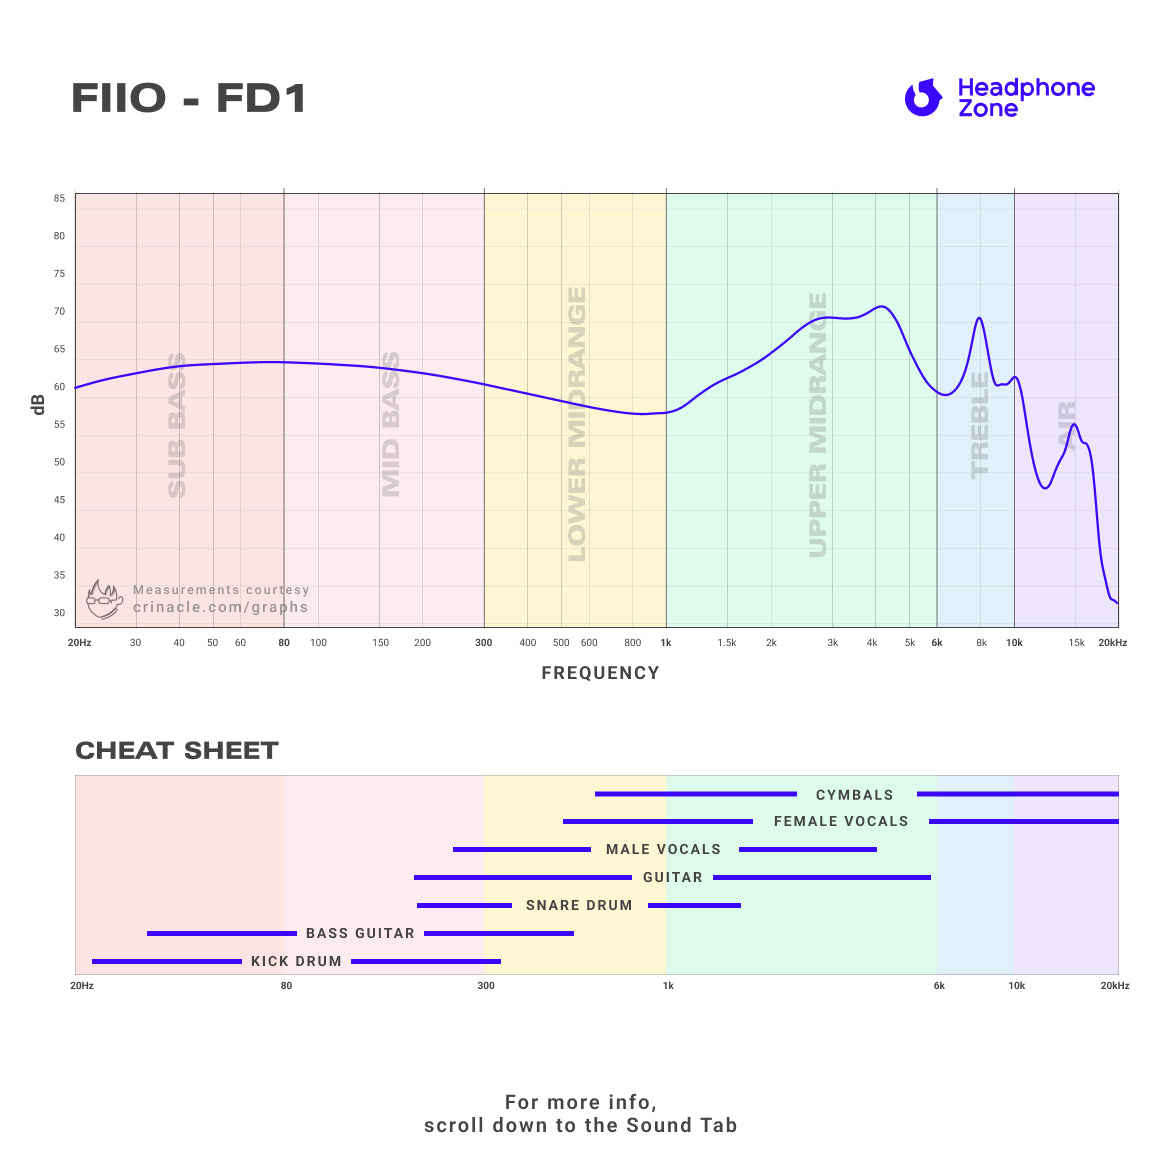 FiiO - FD1